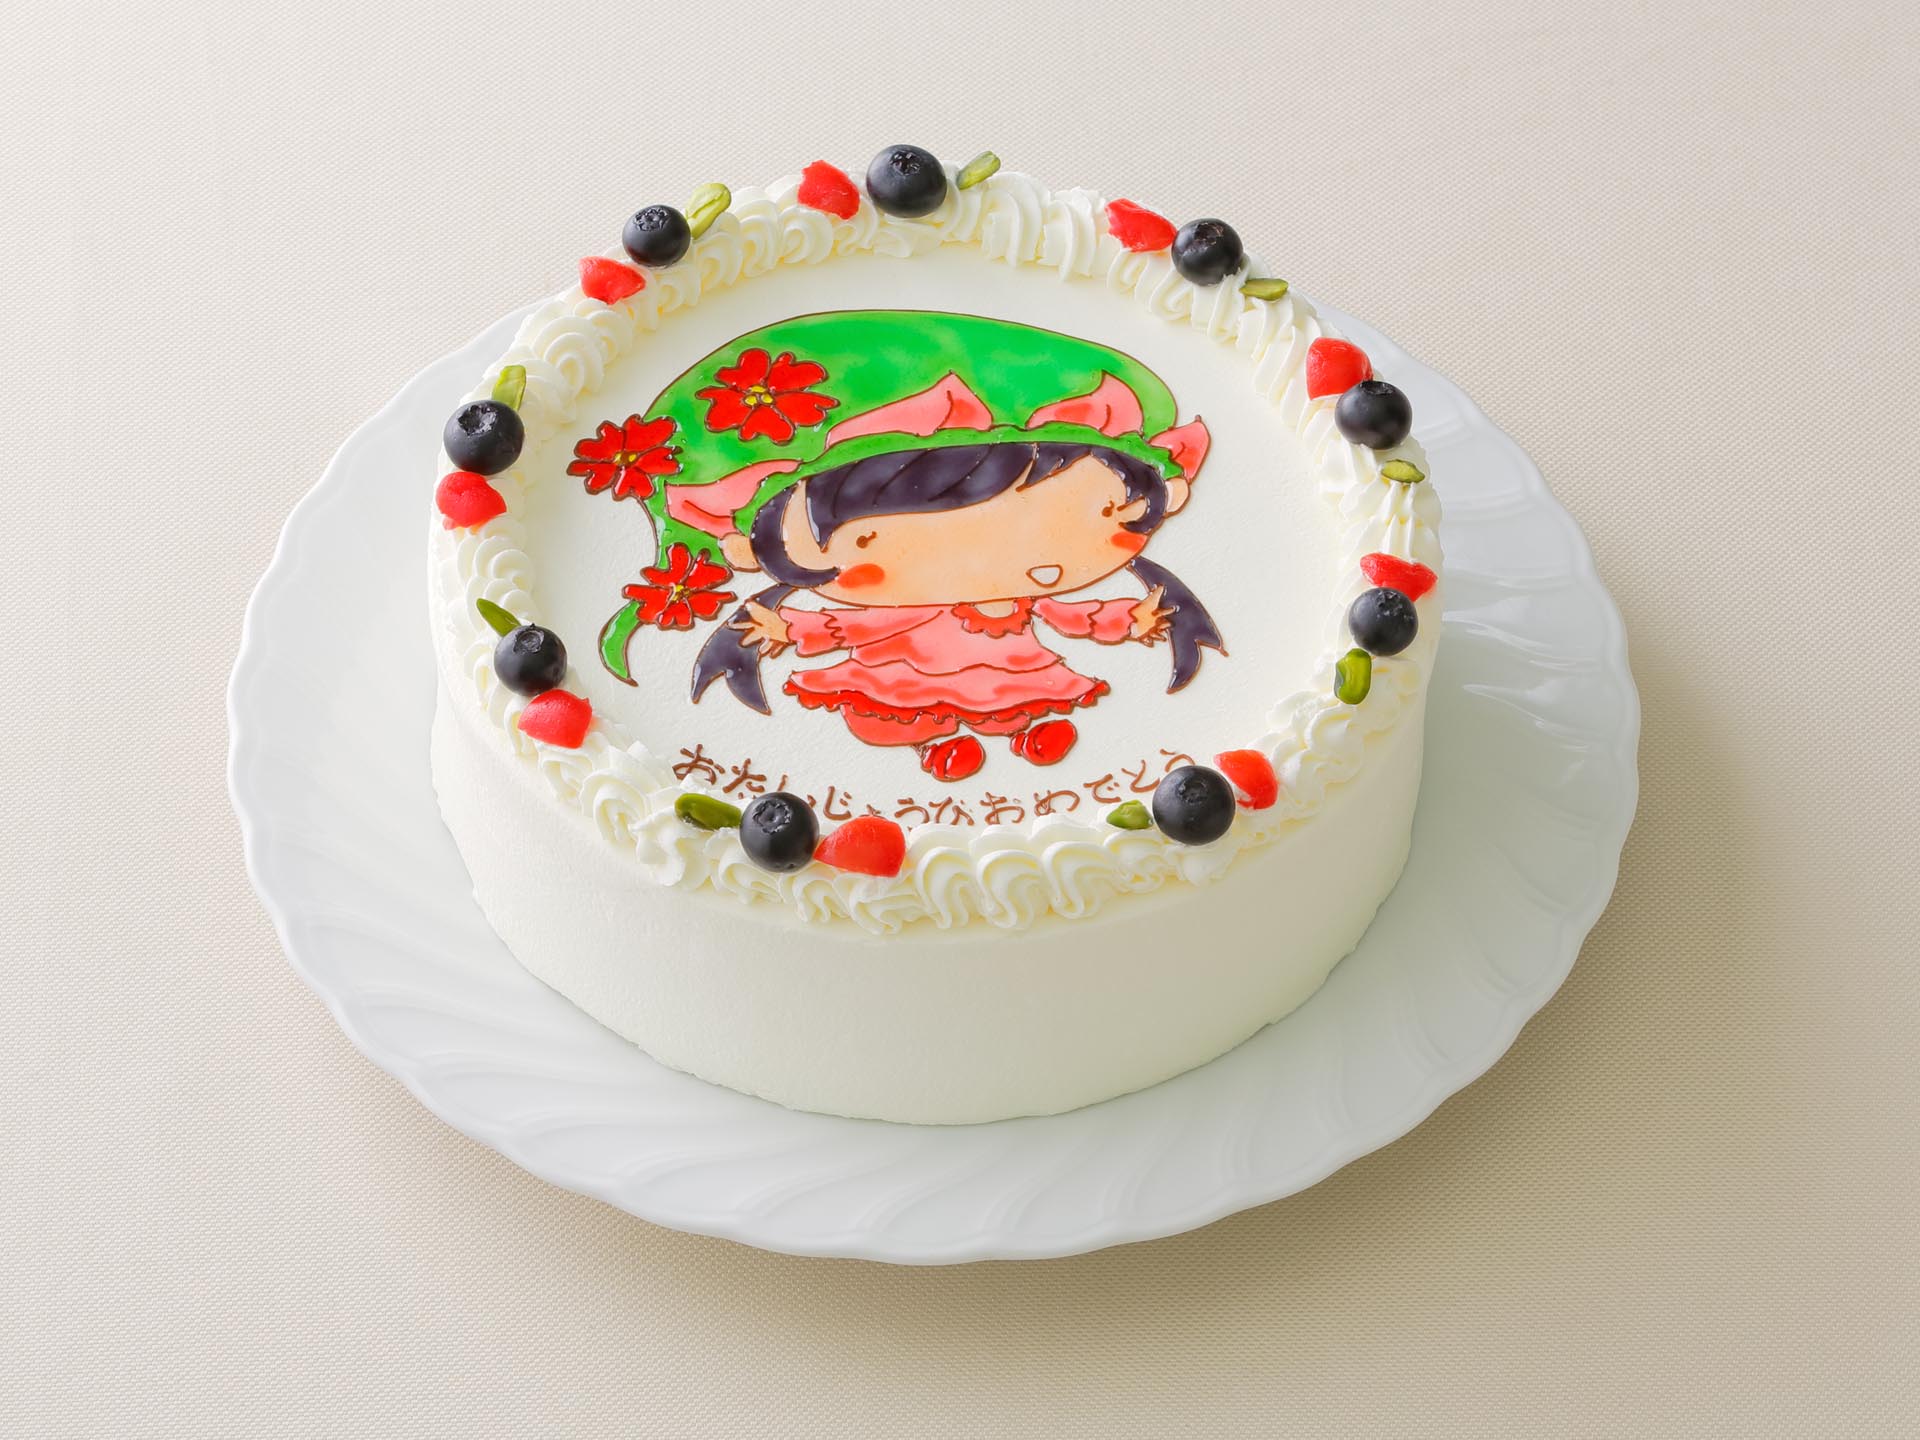 Lubre特集 宮崎で評判のキャラケーキおすすめ店ランキング キャラケーキ専門ガイド Lubre